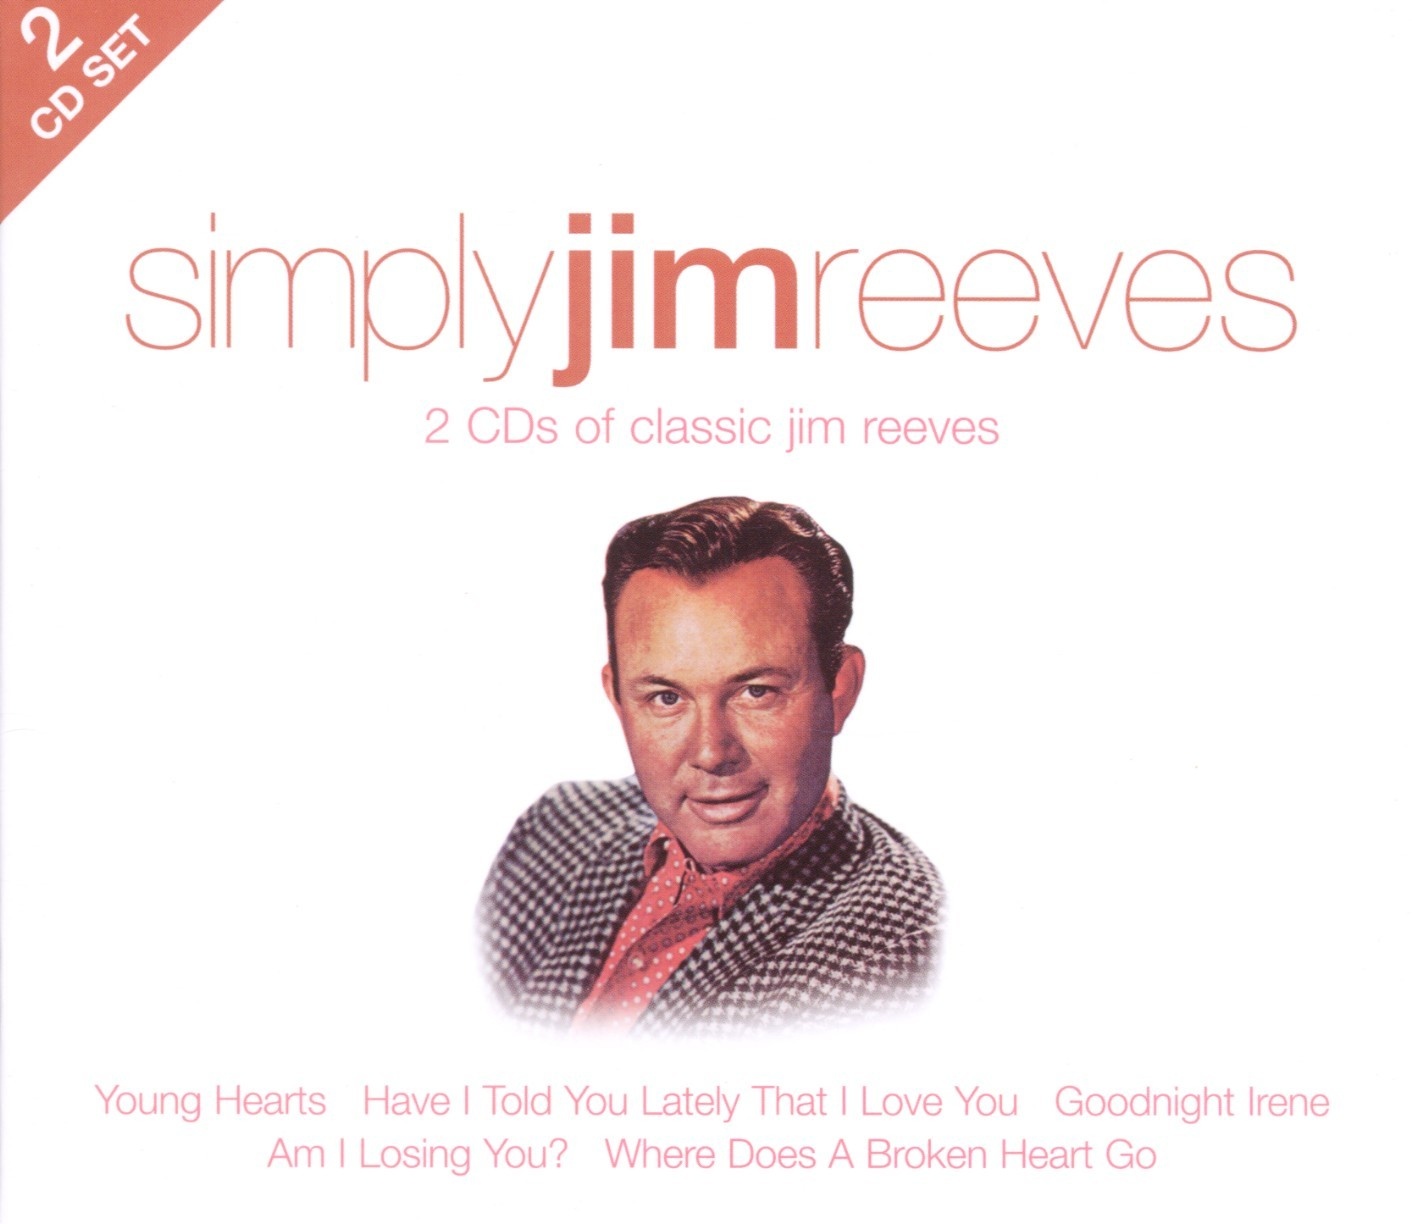 Simply Jim Reeves (2cd) - Jim Reeves. (CD)